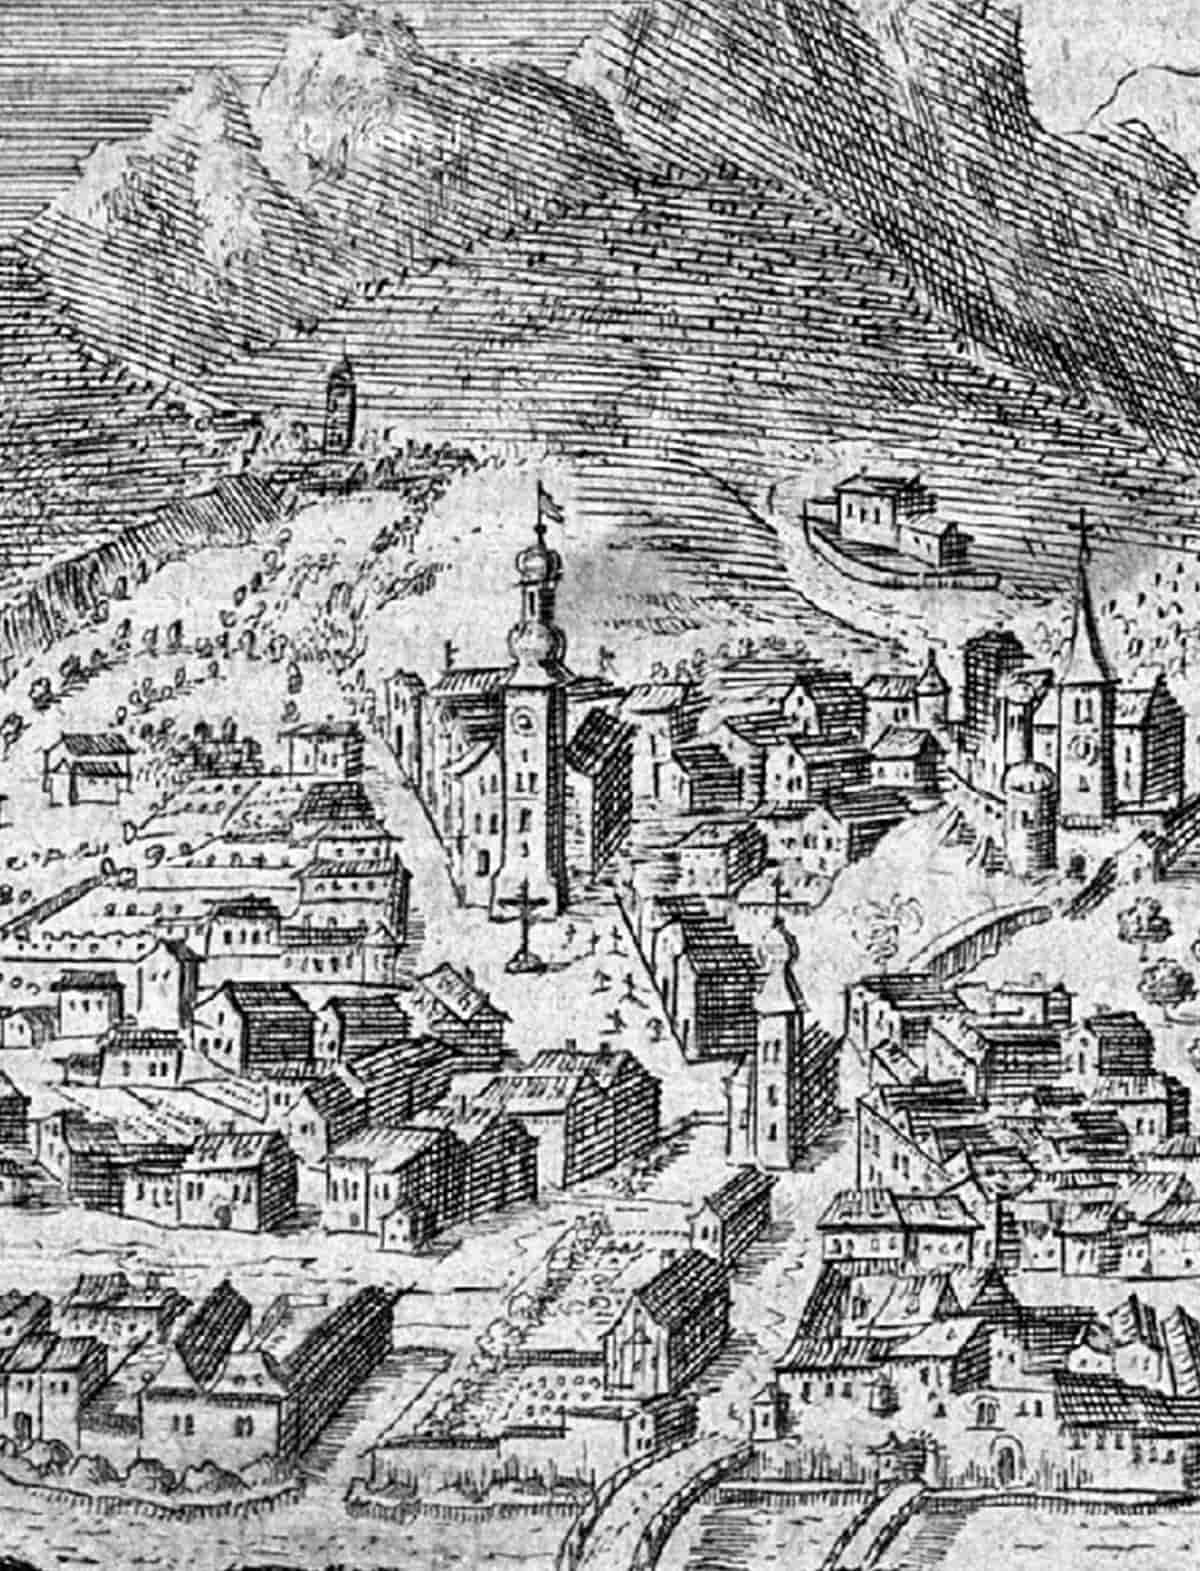 Stadtbild in schwarz-weiß gezeichnet